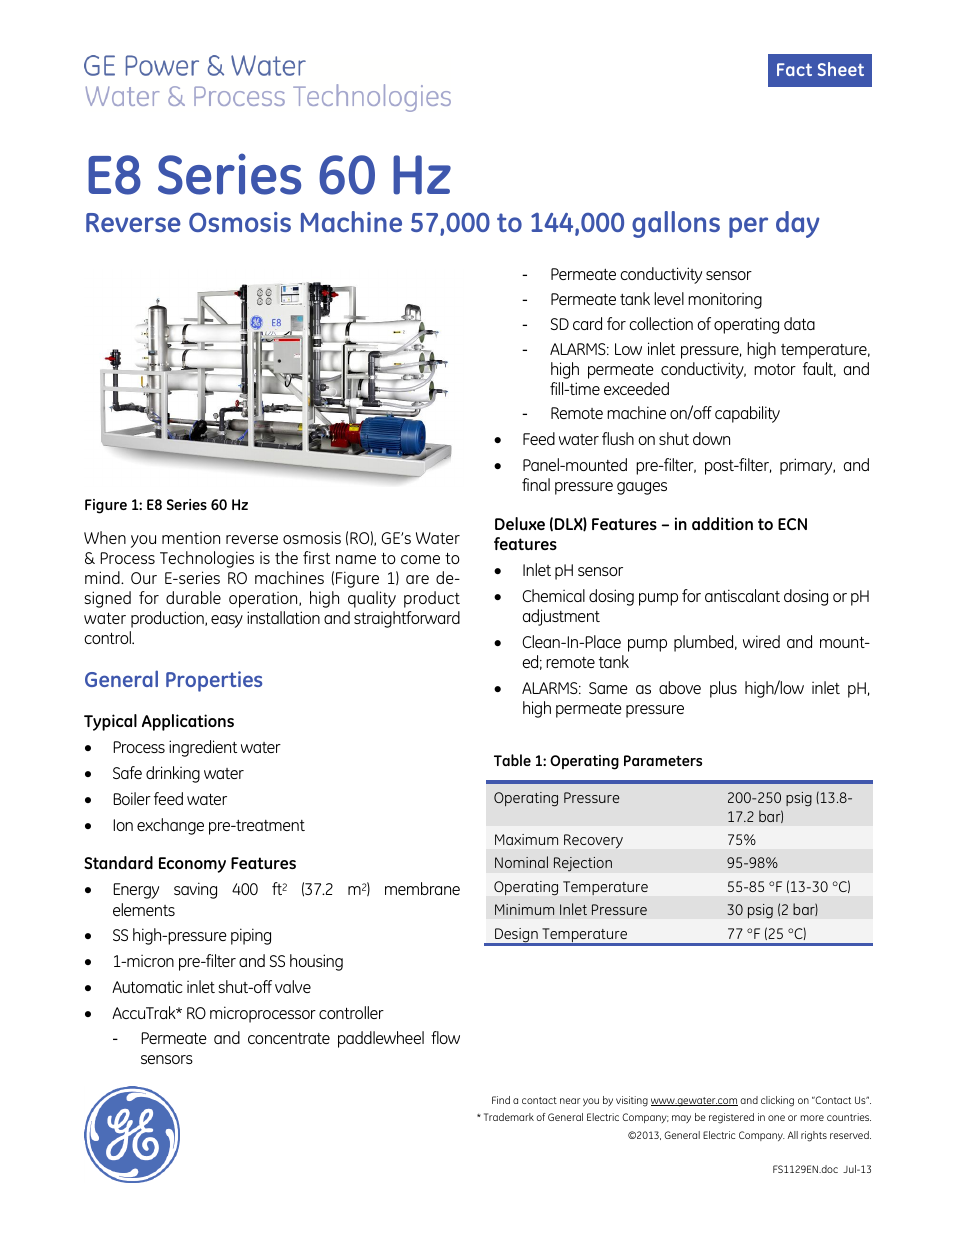 E-Series Reverse Osmosis - E8 Series 60 Hz